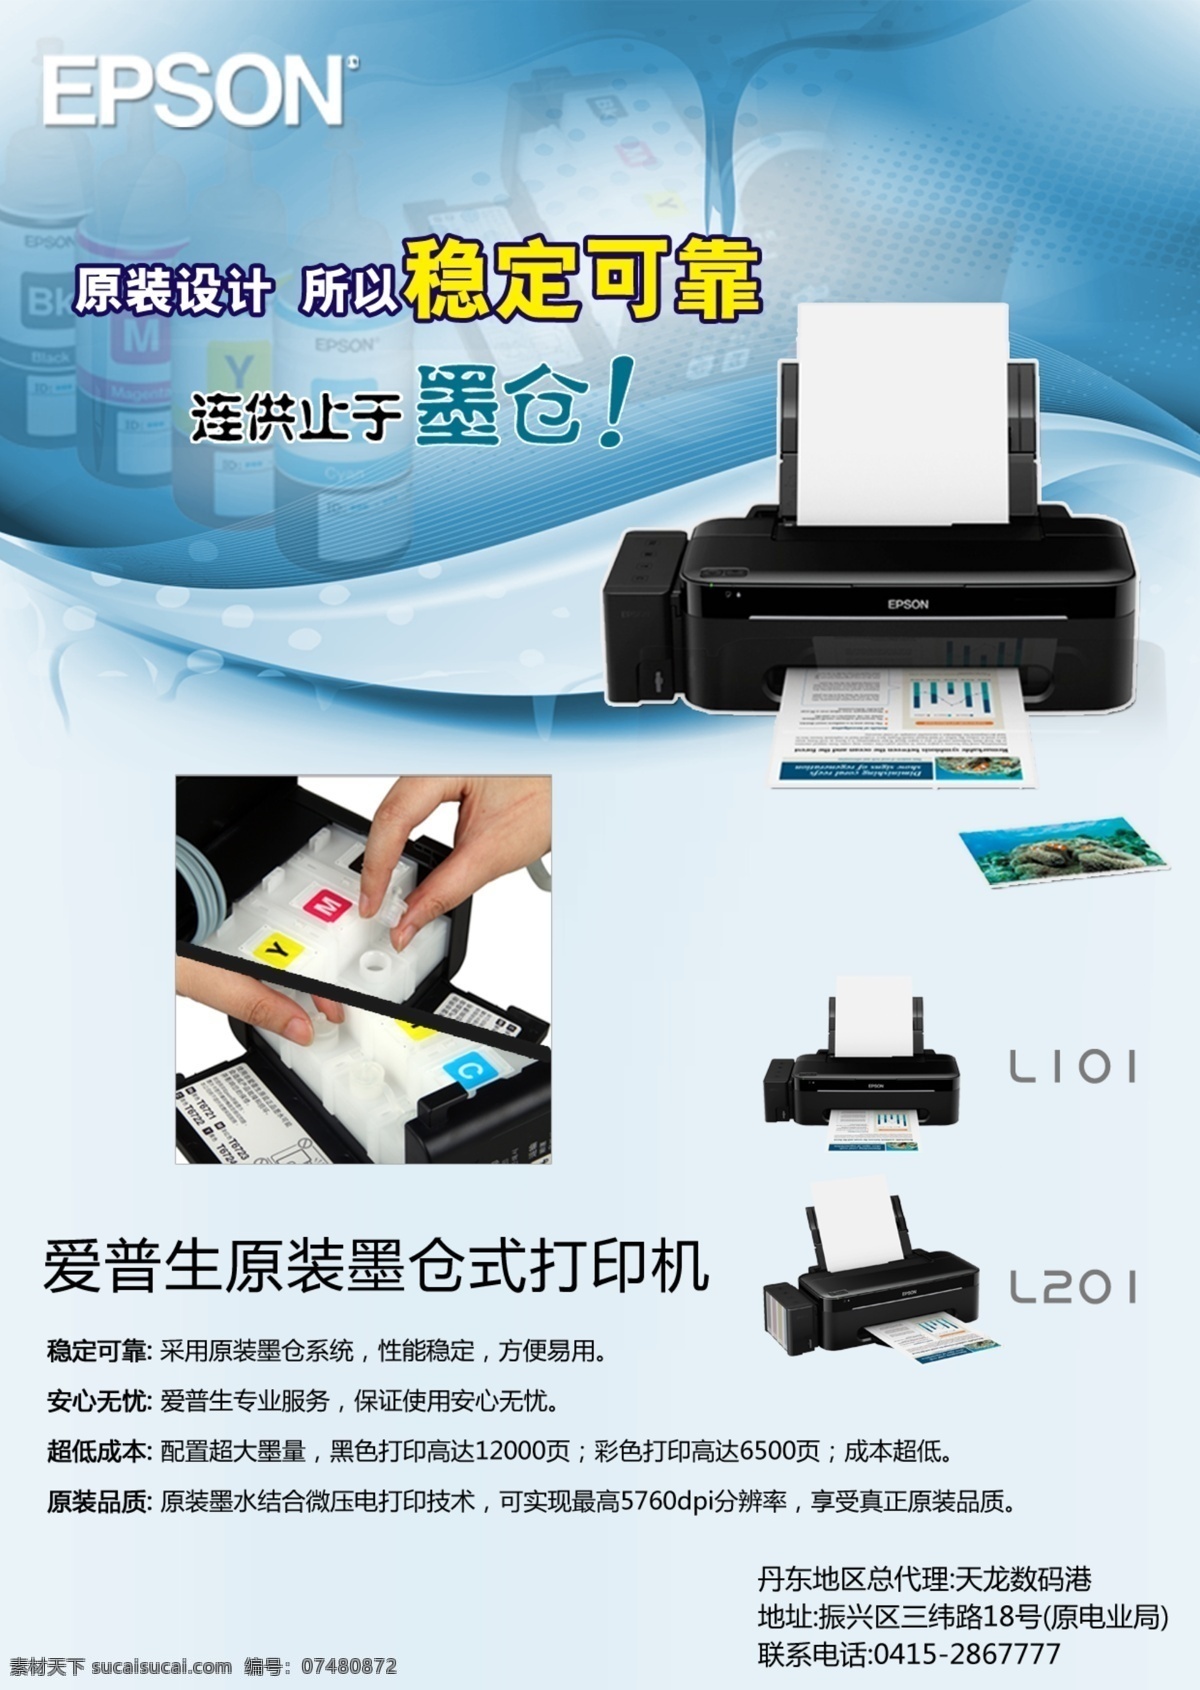 打印机宣传单 爱普生 epson l101 l201 打印机 原装 墨仓式 墨水 照片 墨盒 dm宣传单 广告设计模板 源文件